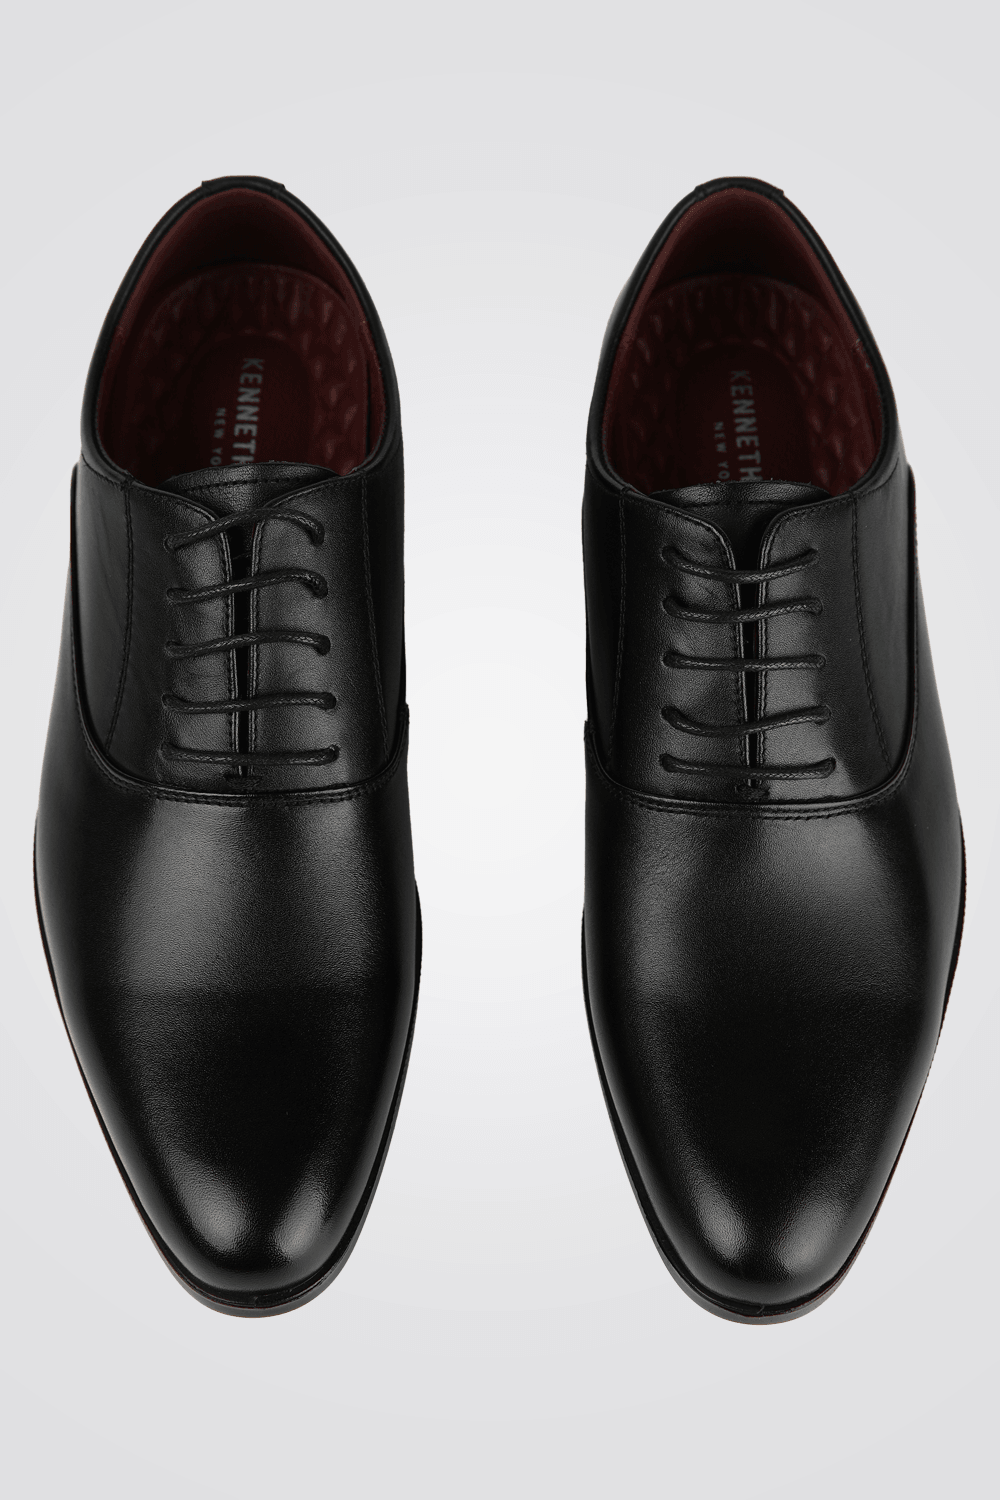 KENNETH COLE - נעל עור אלגנטית בצבע שחור - MASHBIR//365